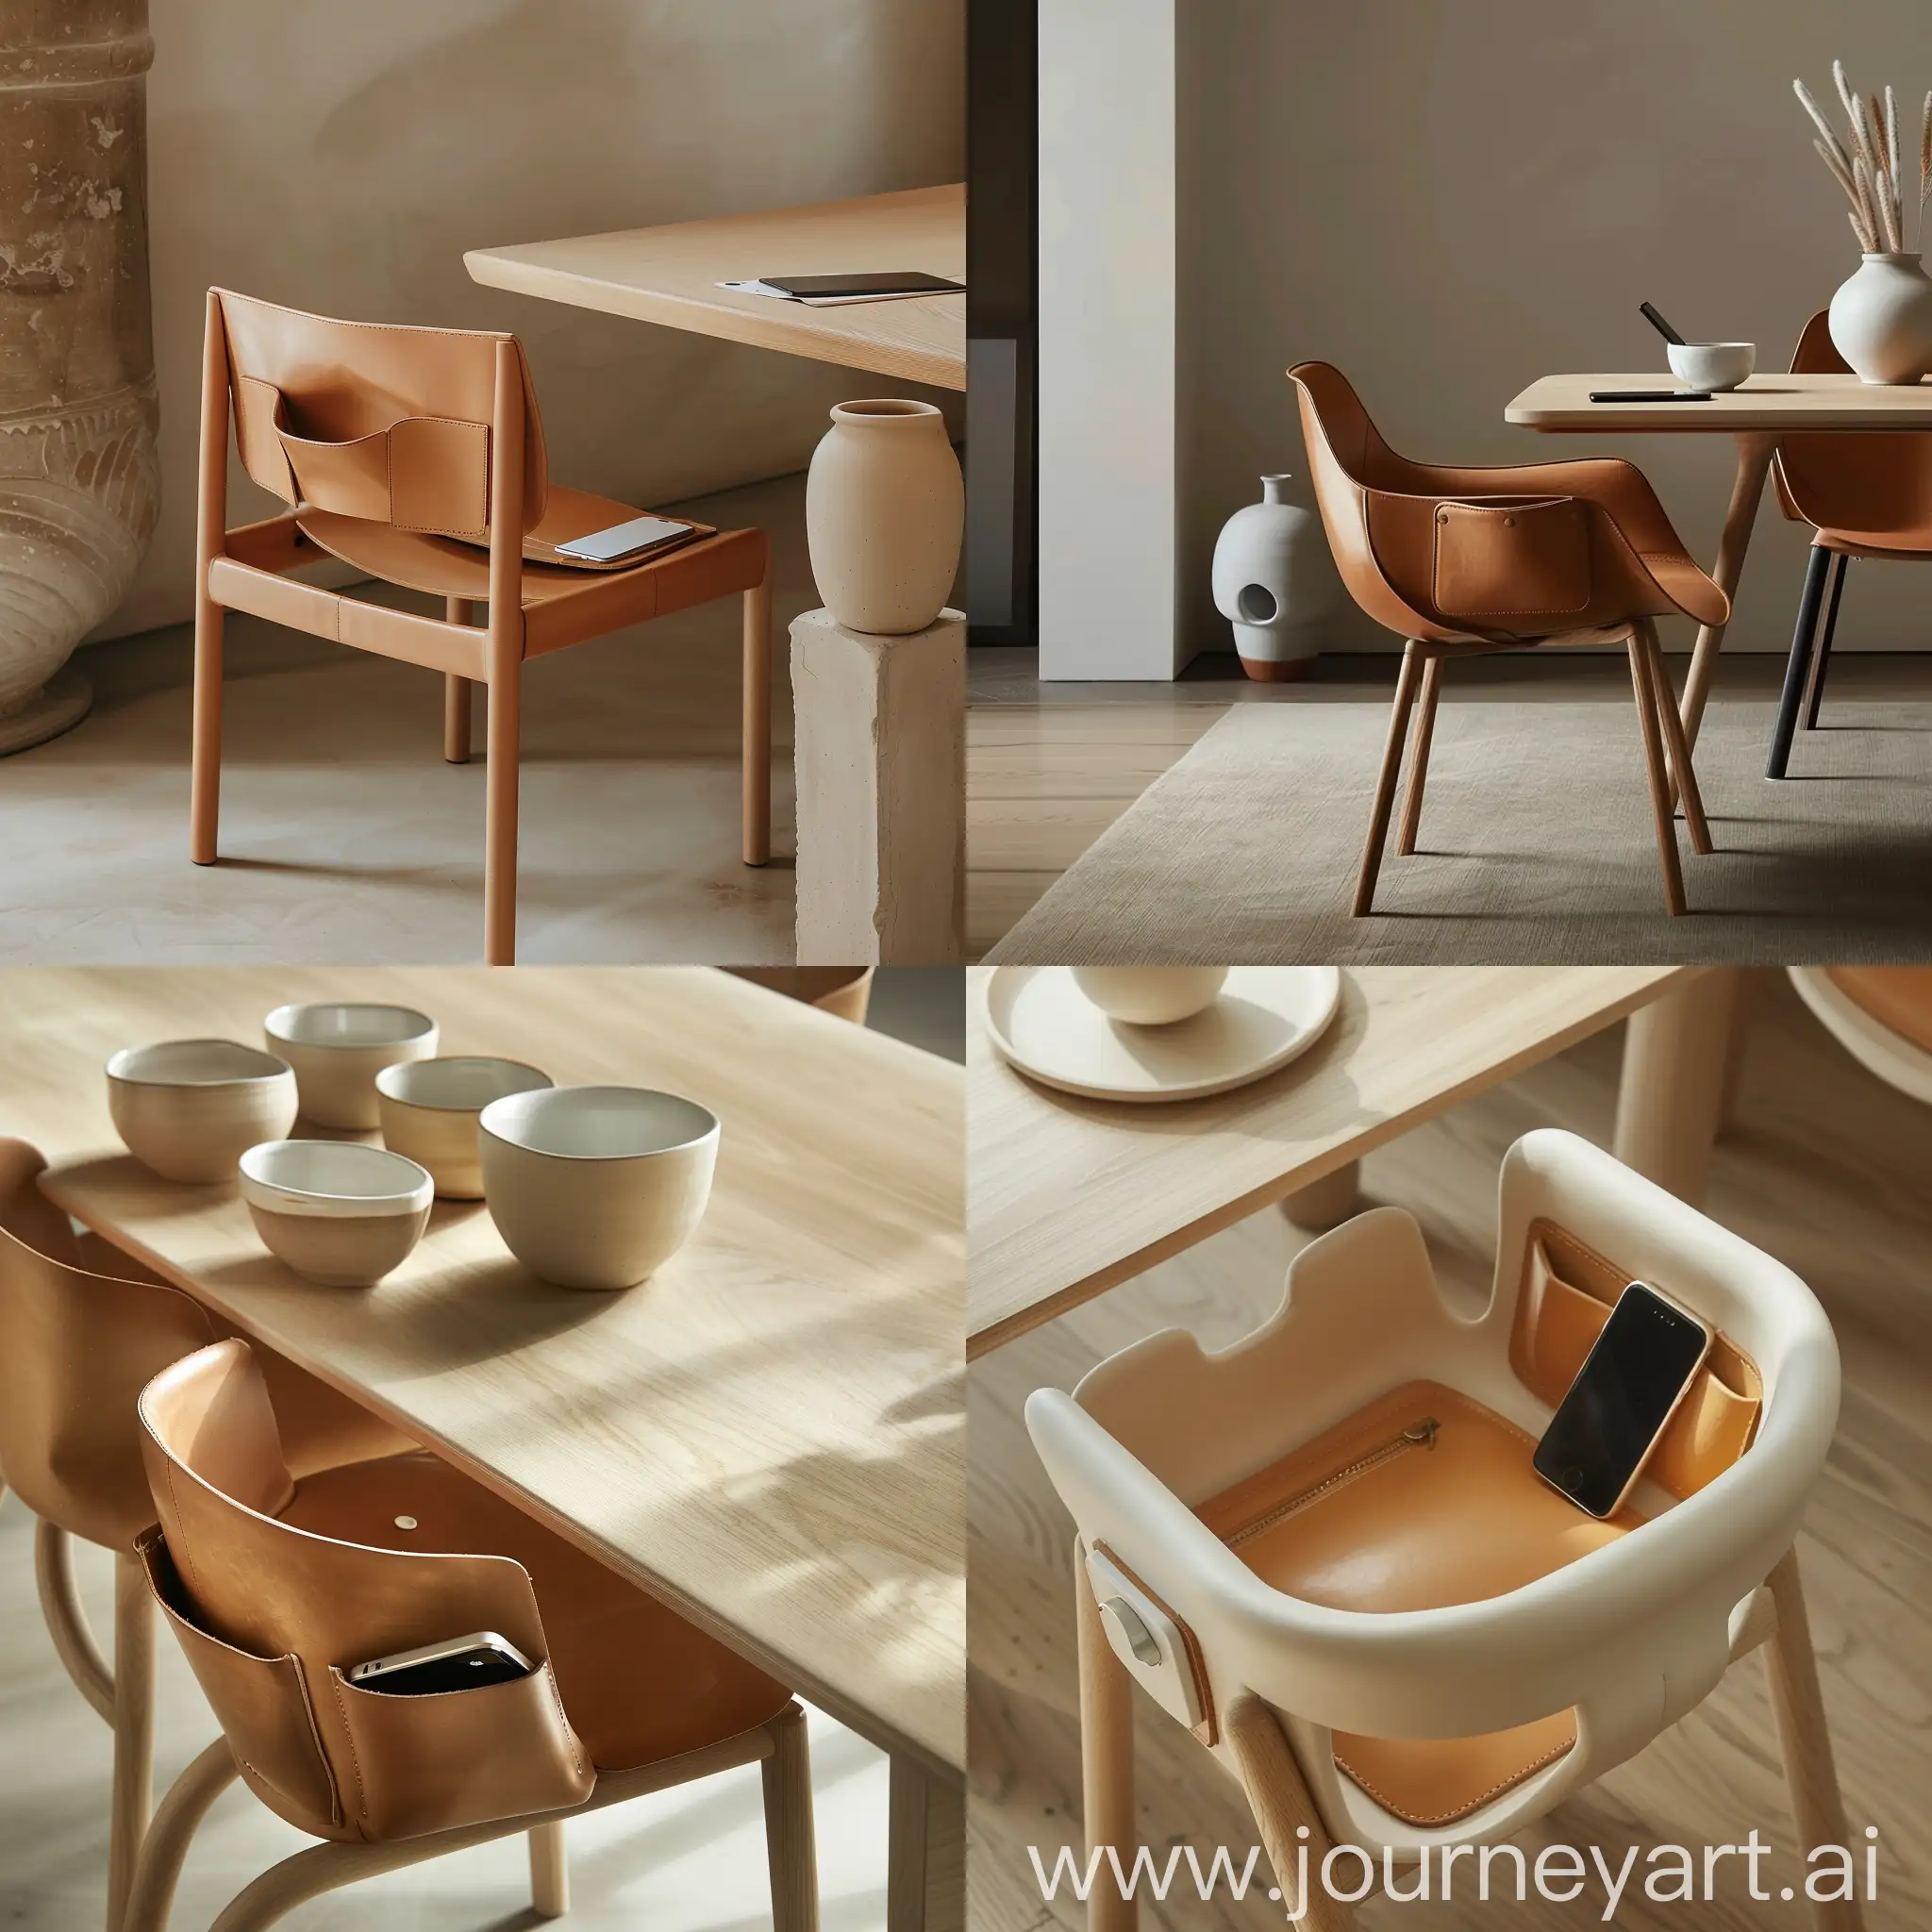 Минималистичный дизайн стула и обеденного стола, джапанди, японский минимализм, скандинавский стиль , сиденье и спинка стула кожаное, формообразование предметов вдохновлено керамикой, у стула есть кармашки для телефона 